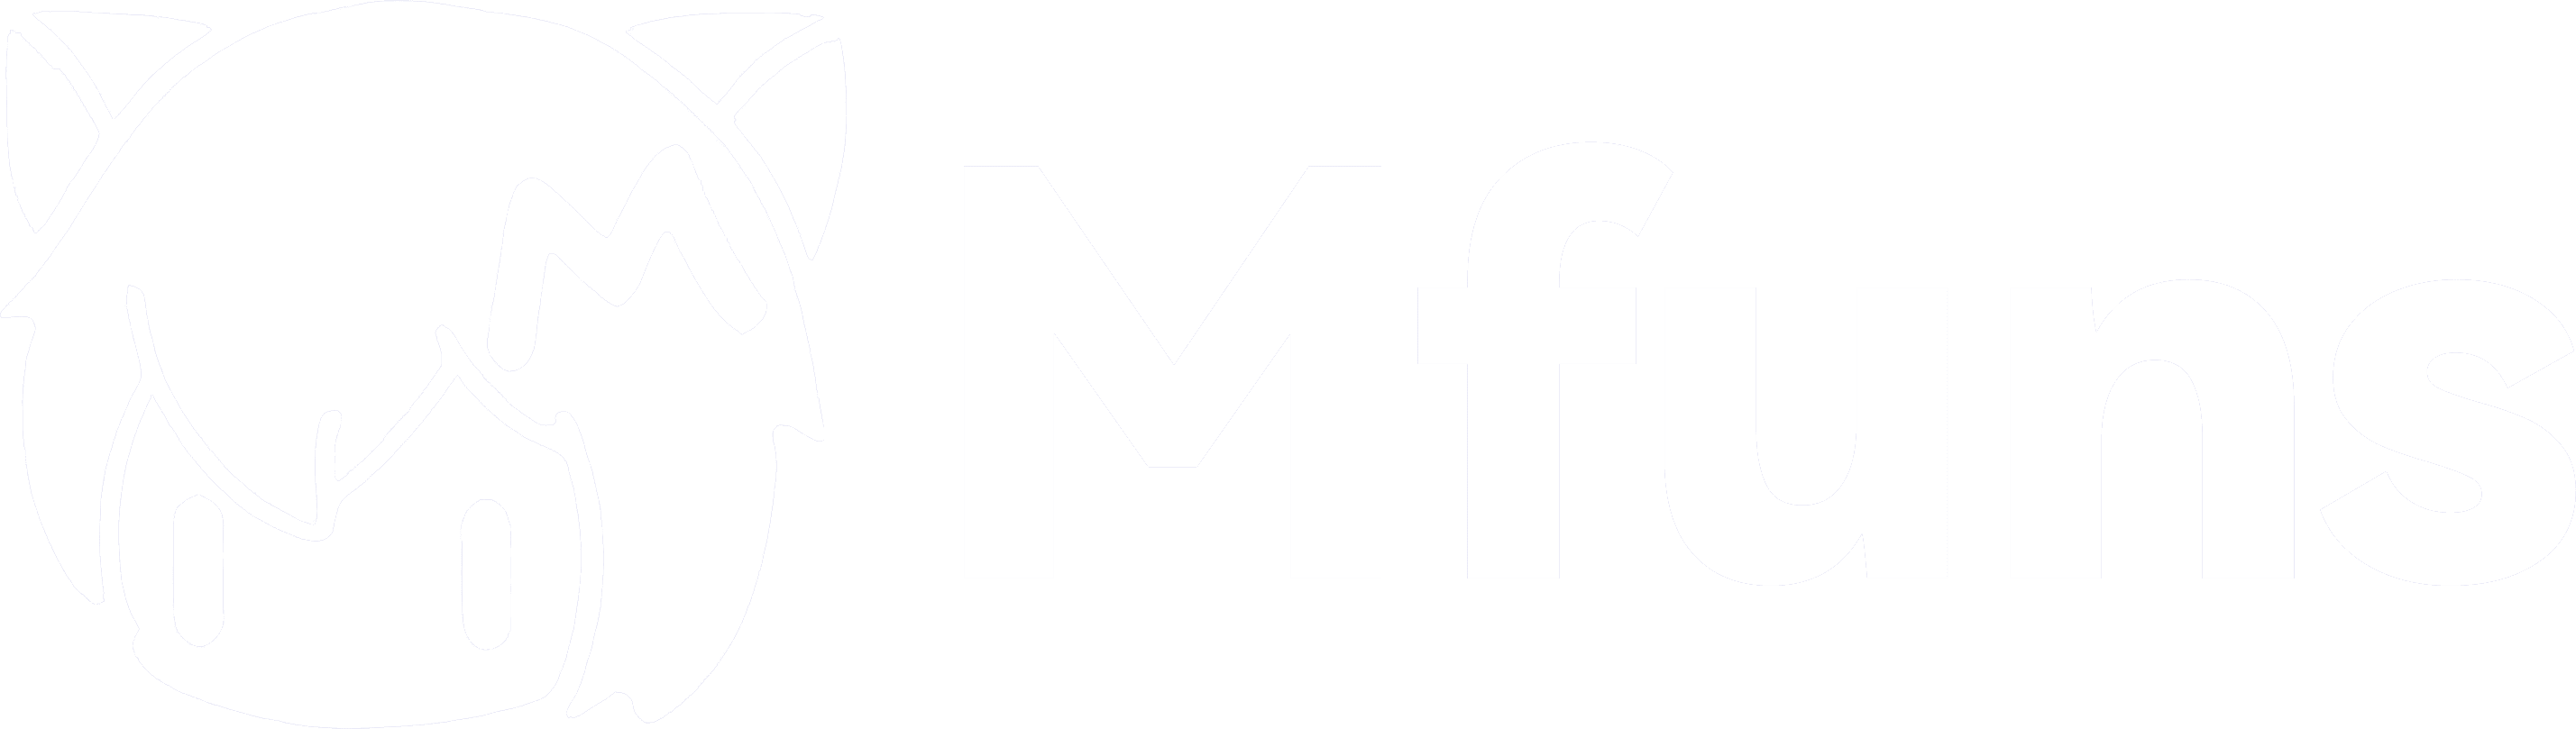 mfuns logo